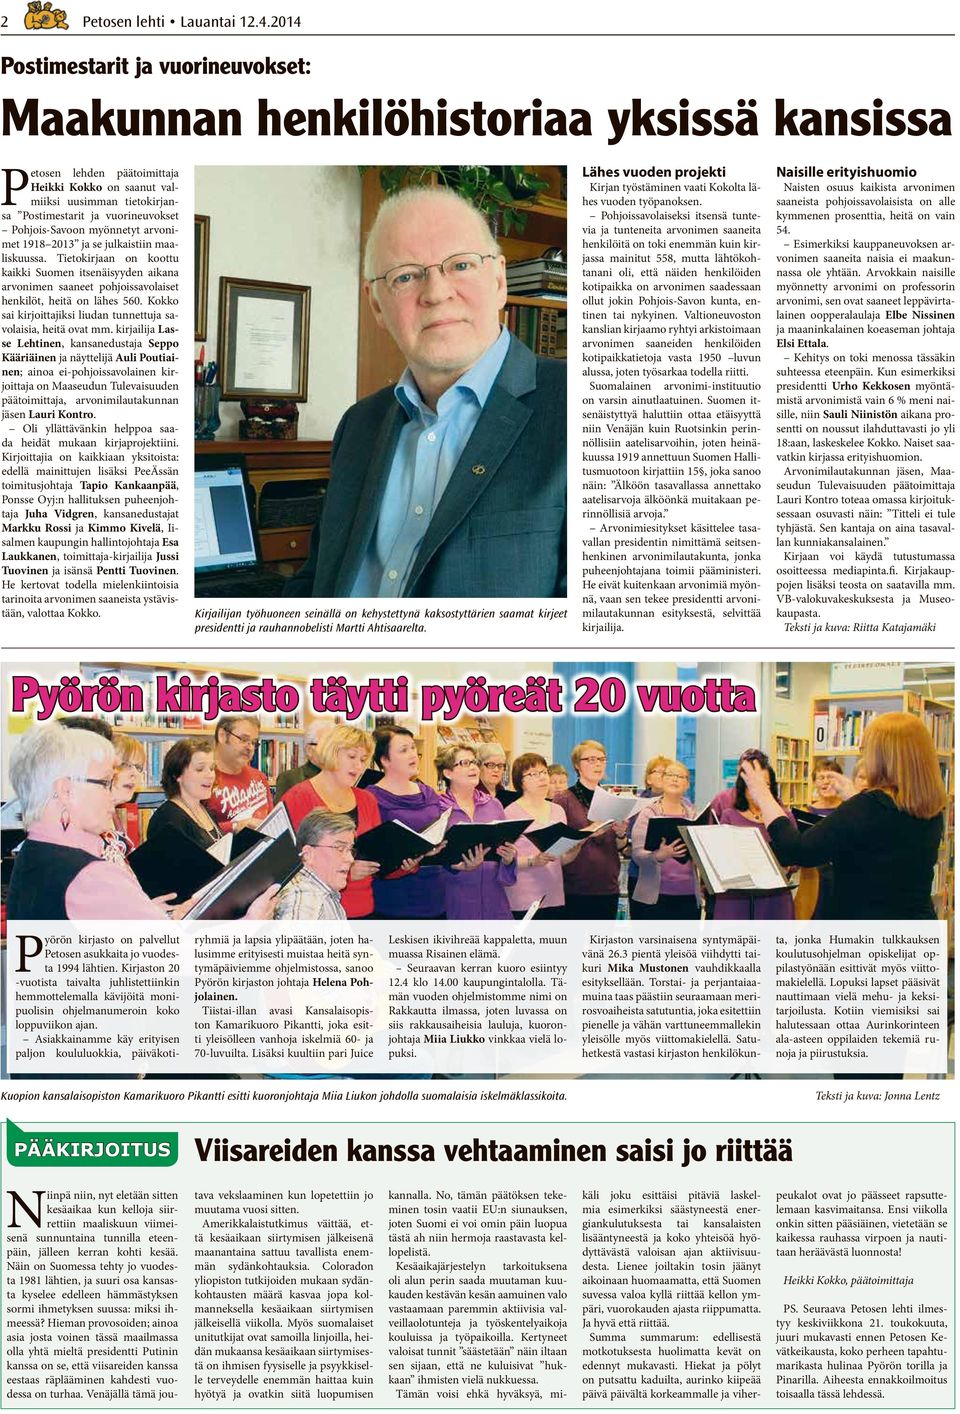 Pohjois-Savoon myönnetyt arvonimet 1918 2013 ja se julkaistiin maaliskuussa. Tietokirjaan on koottu kaikki Suomen itsenäisyyden aikana arvonimen saaneet pohjoissavolaiset henkilöt, heitä on lähes 560.